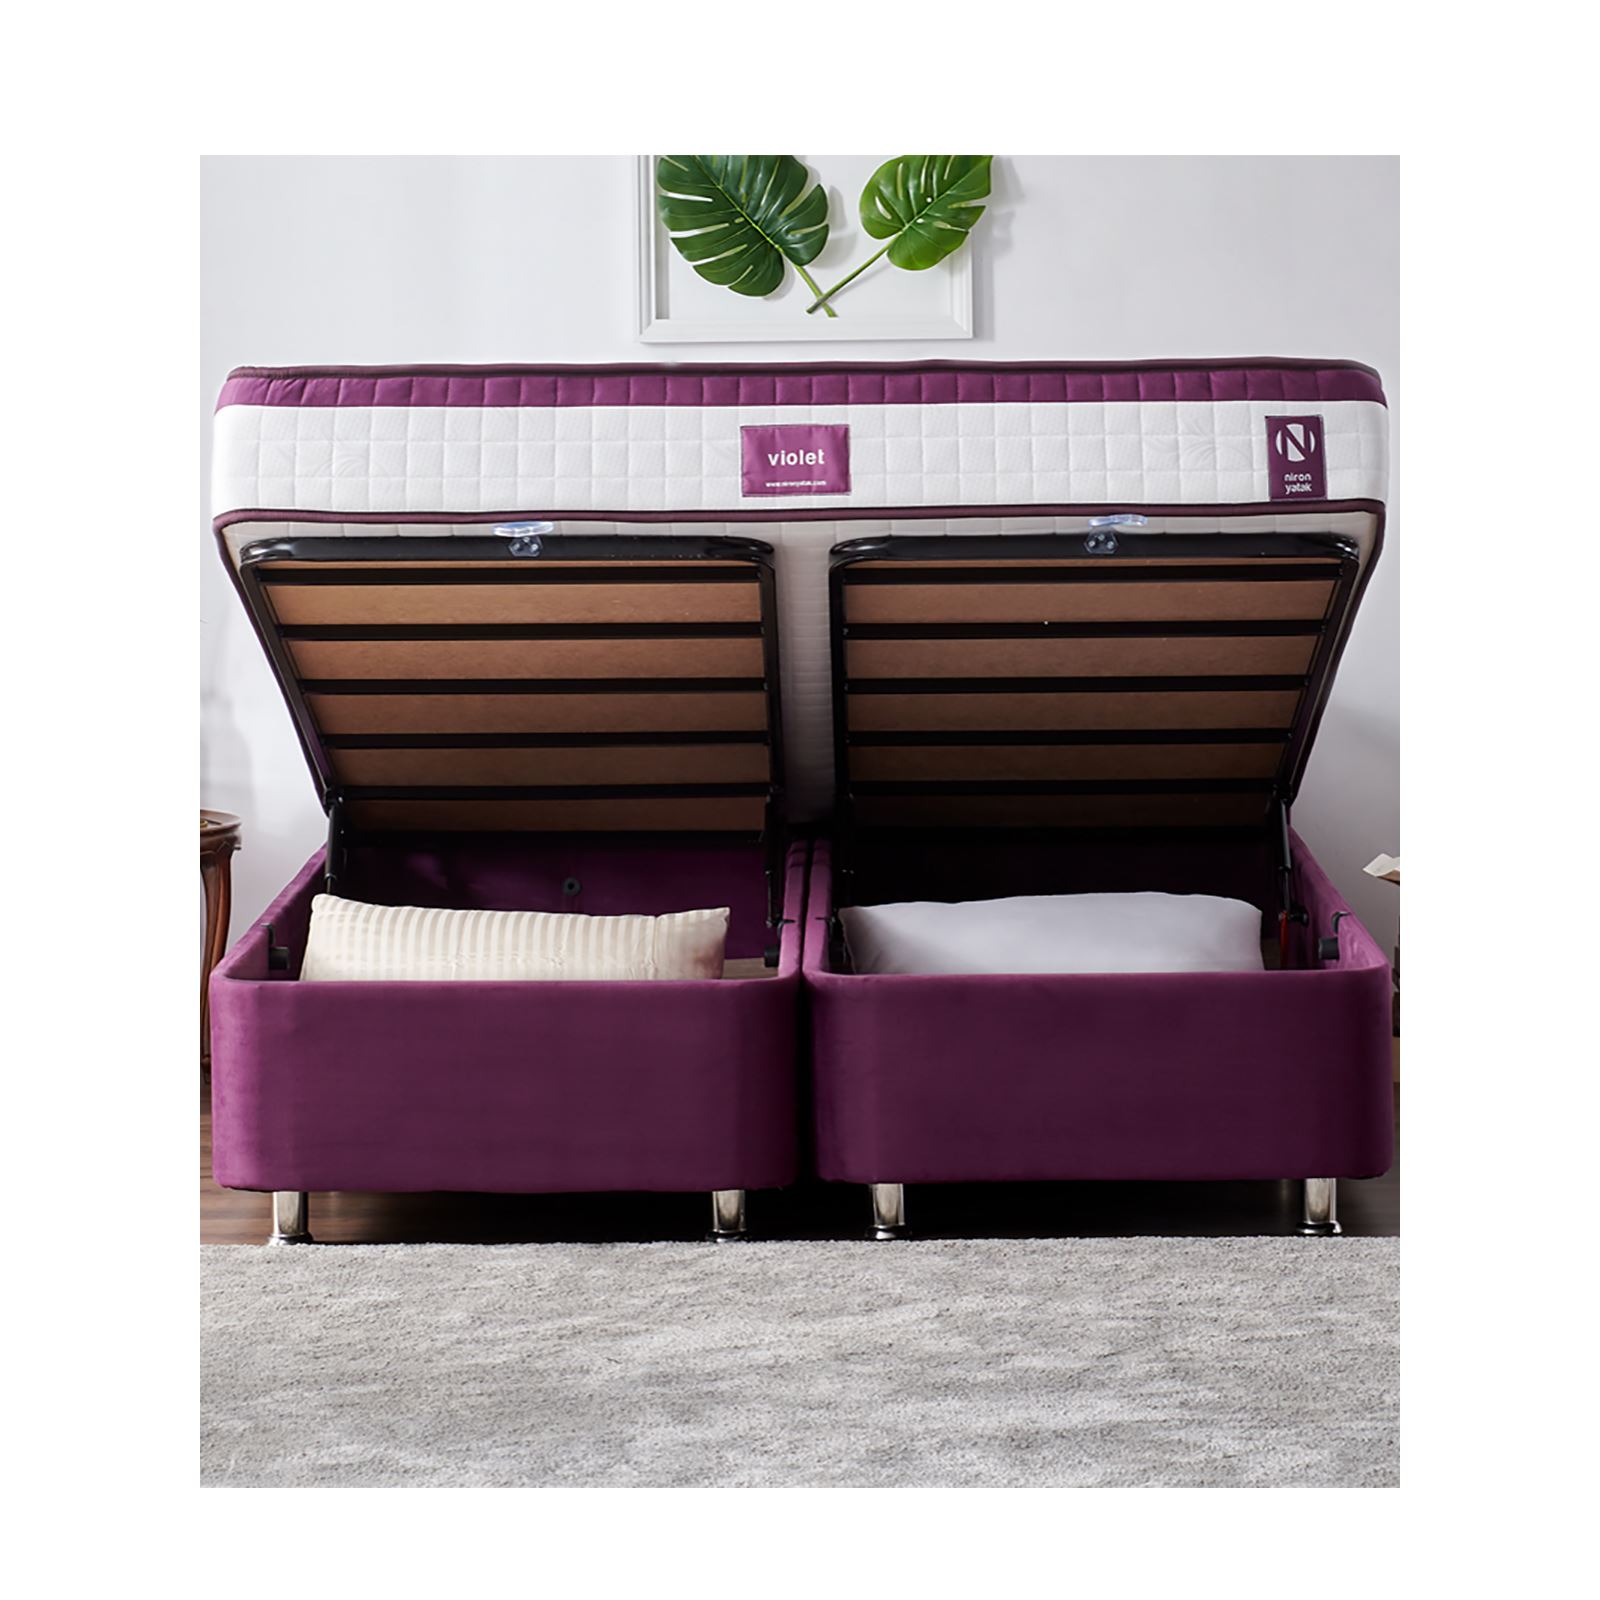 Niron Purple Yatak Seti 150x200 cm Çift Kişilik Yatak Baza Başlık Takımı Orta Sert Yatak Baza ve Başlığı Mor